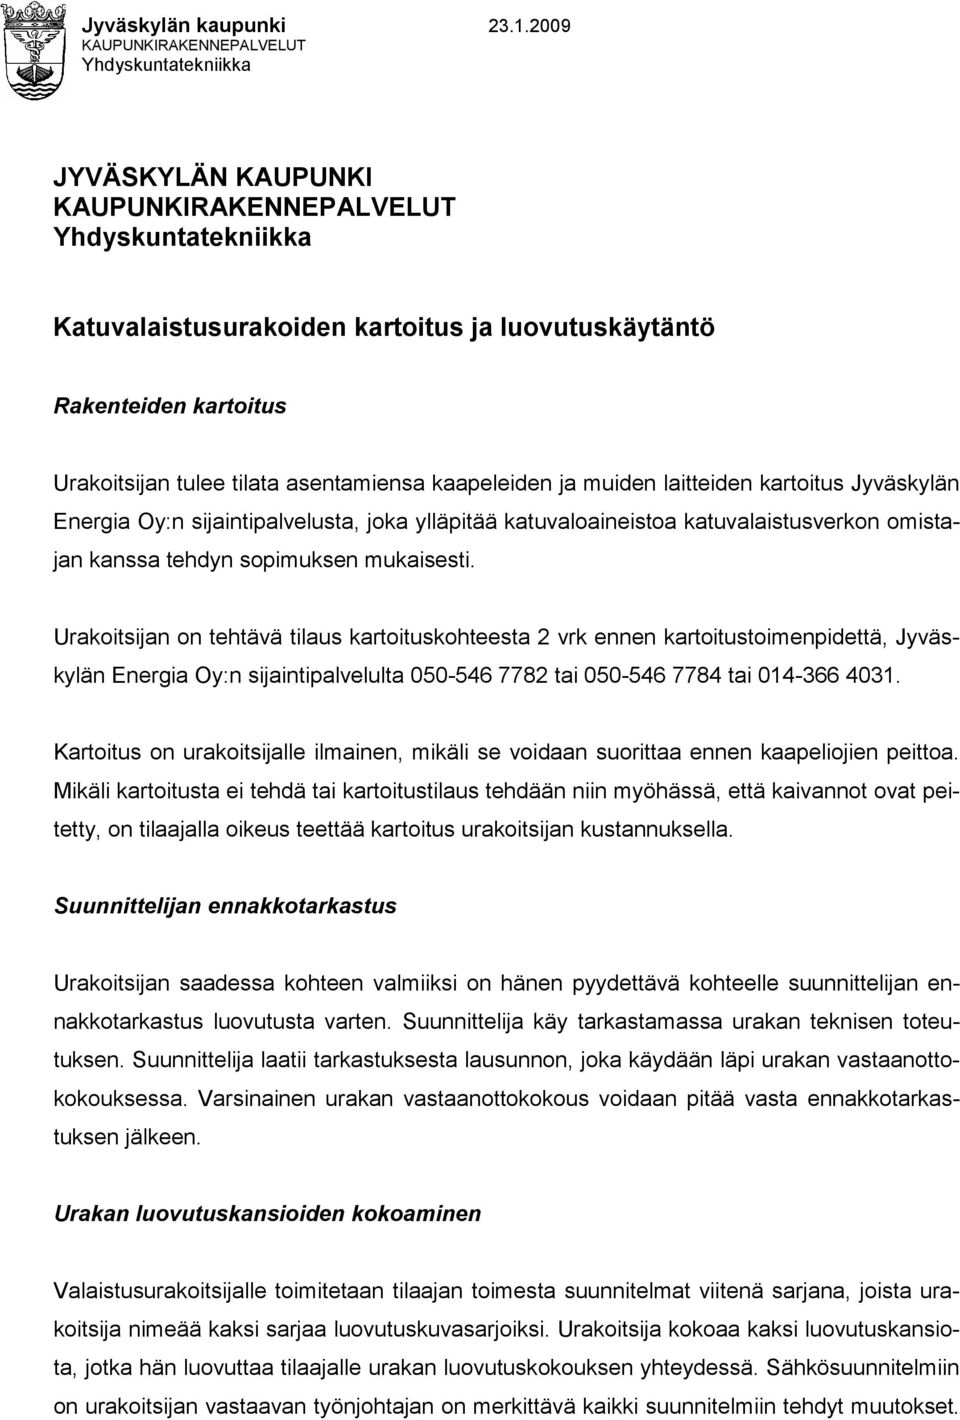 Urakoitsijan tulee tilata asentamiensa kaapeleiden ja muiden laitteiden kartoitus Jyväskylän Energia Oy:n sijaintipalvelusta, joka ylläpitää katuvaloaineistoa katuvalaistusverkon omistajan kanssa